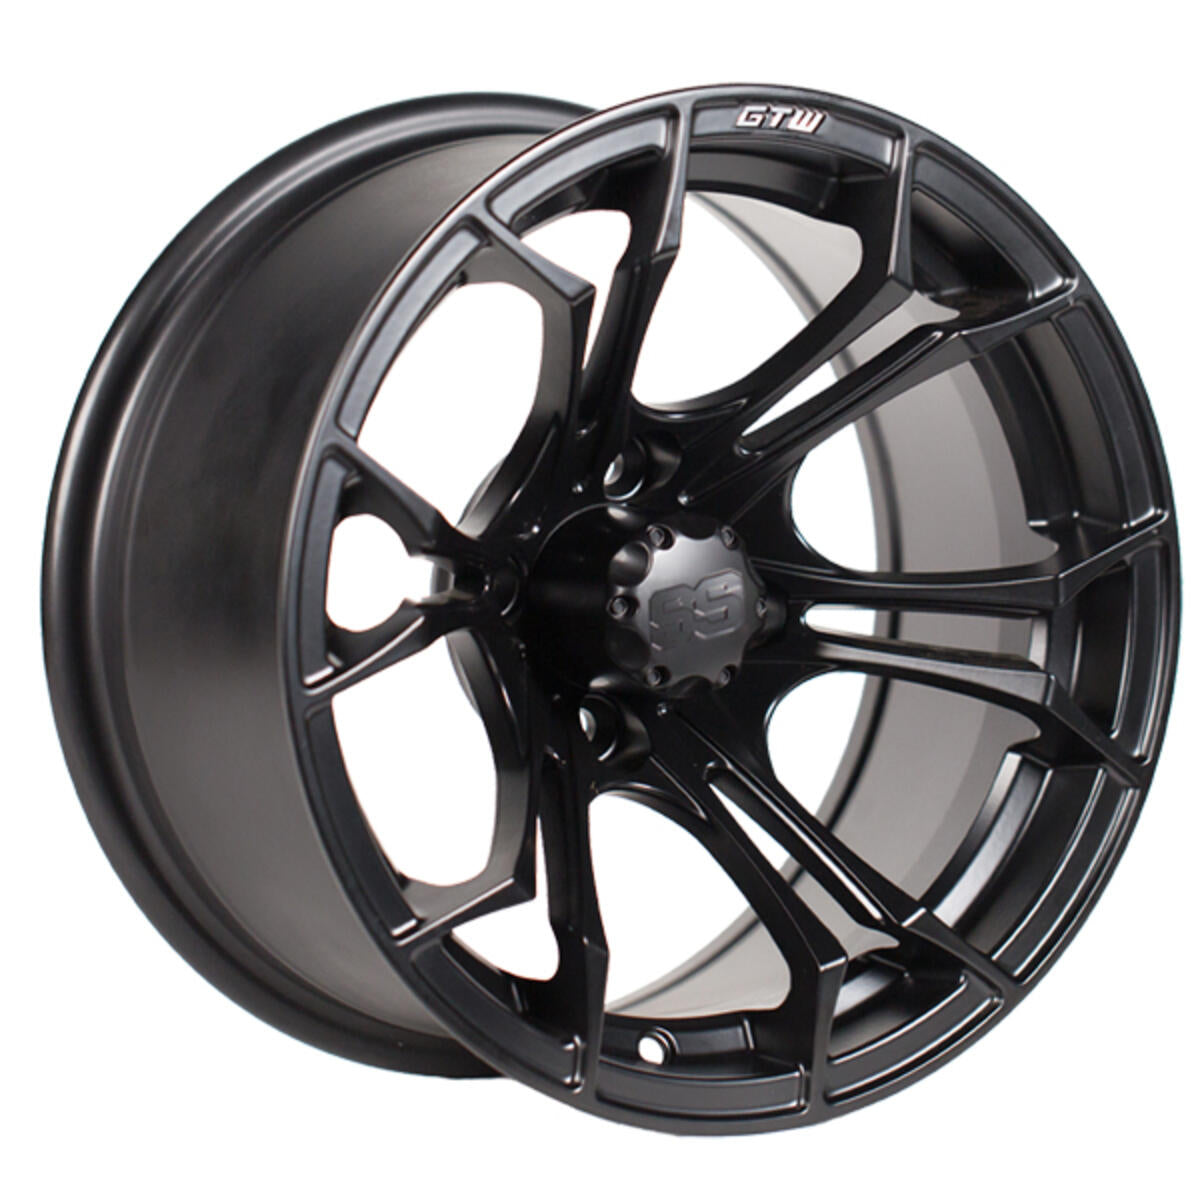 14" GTW Spyder Wheel - Matte Black 19-245